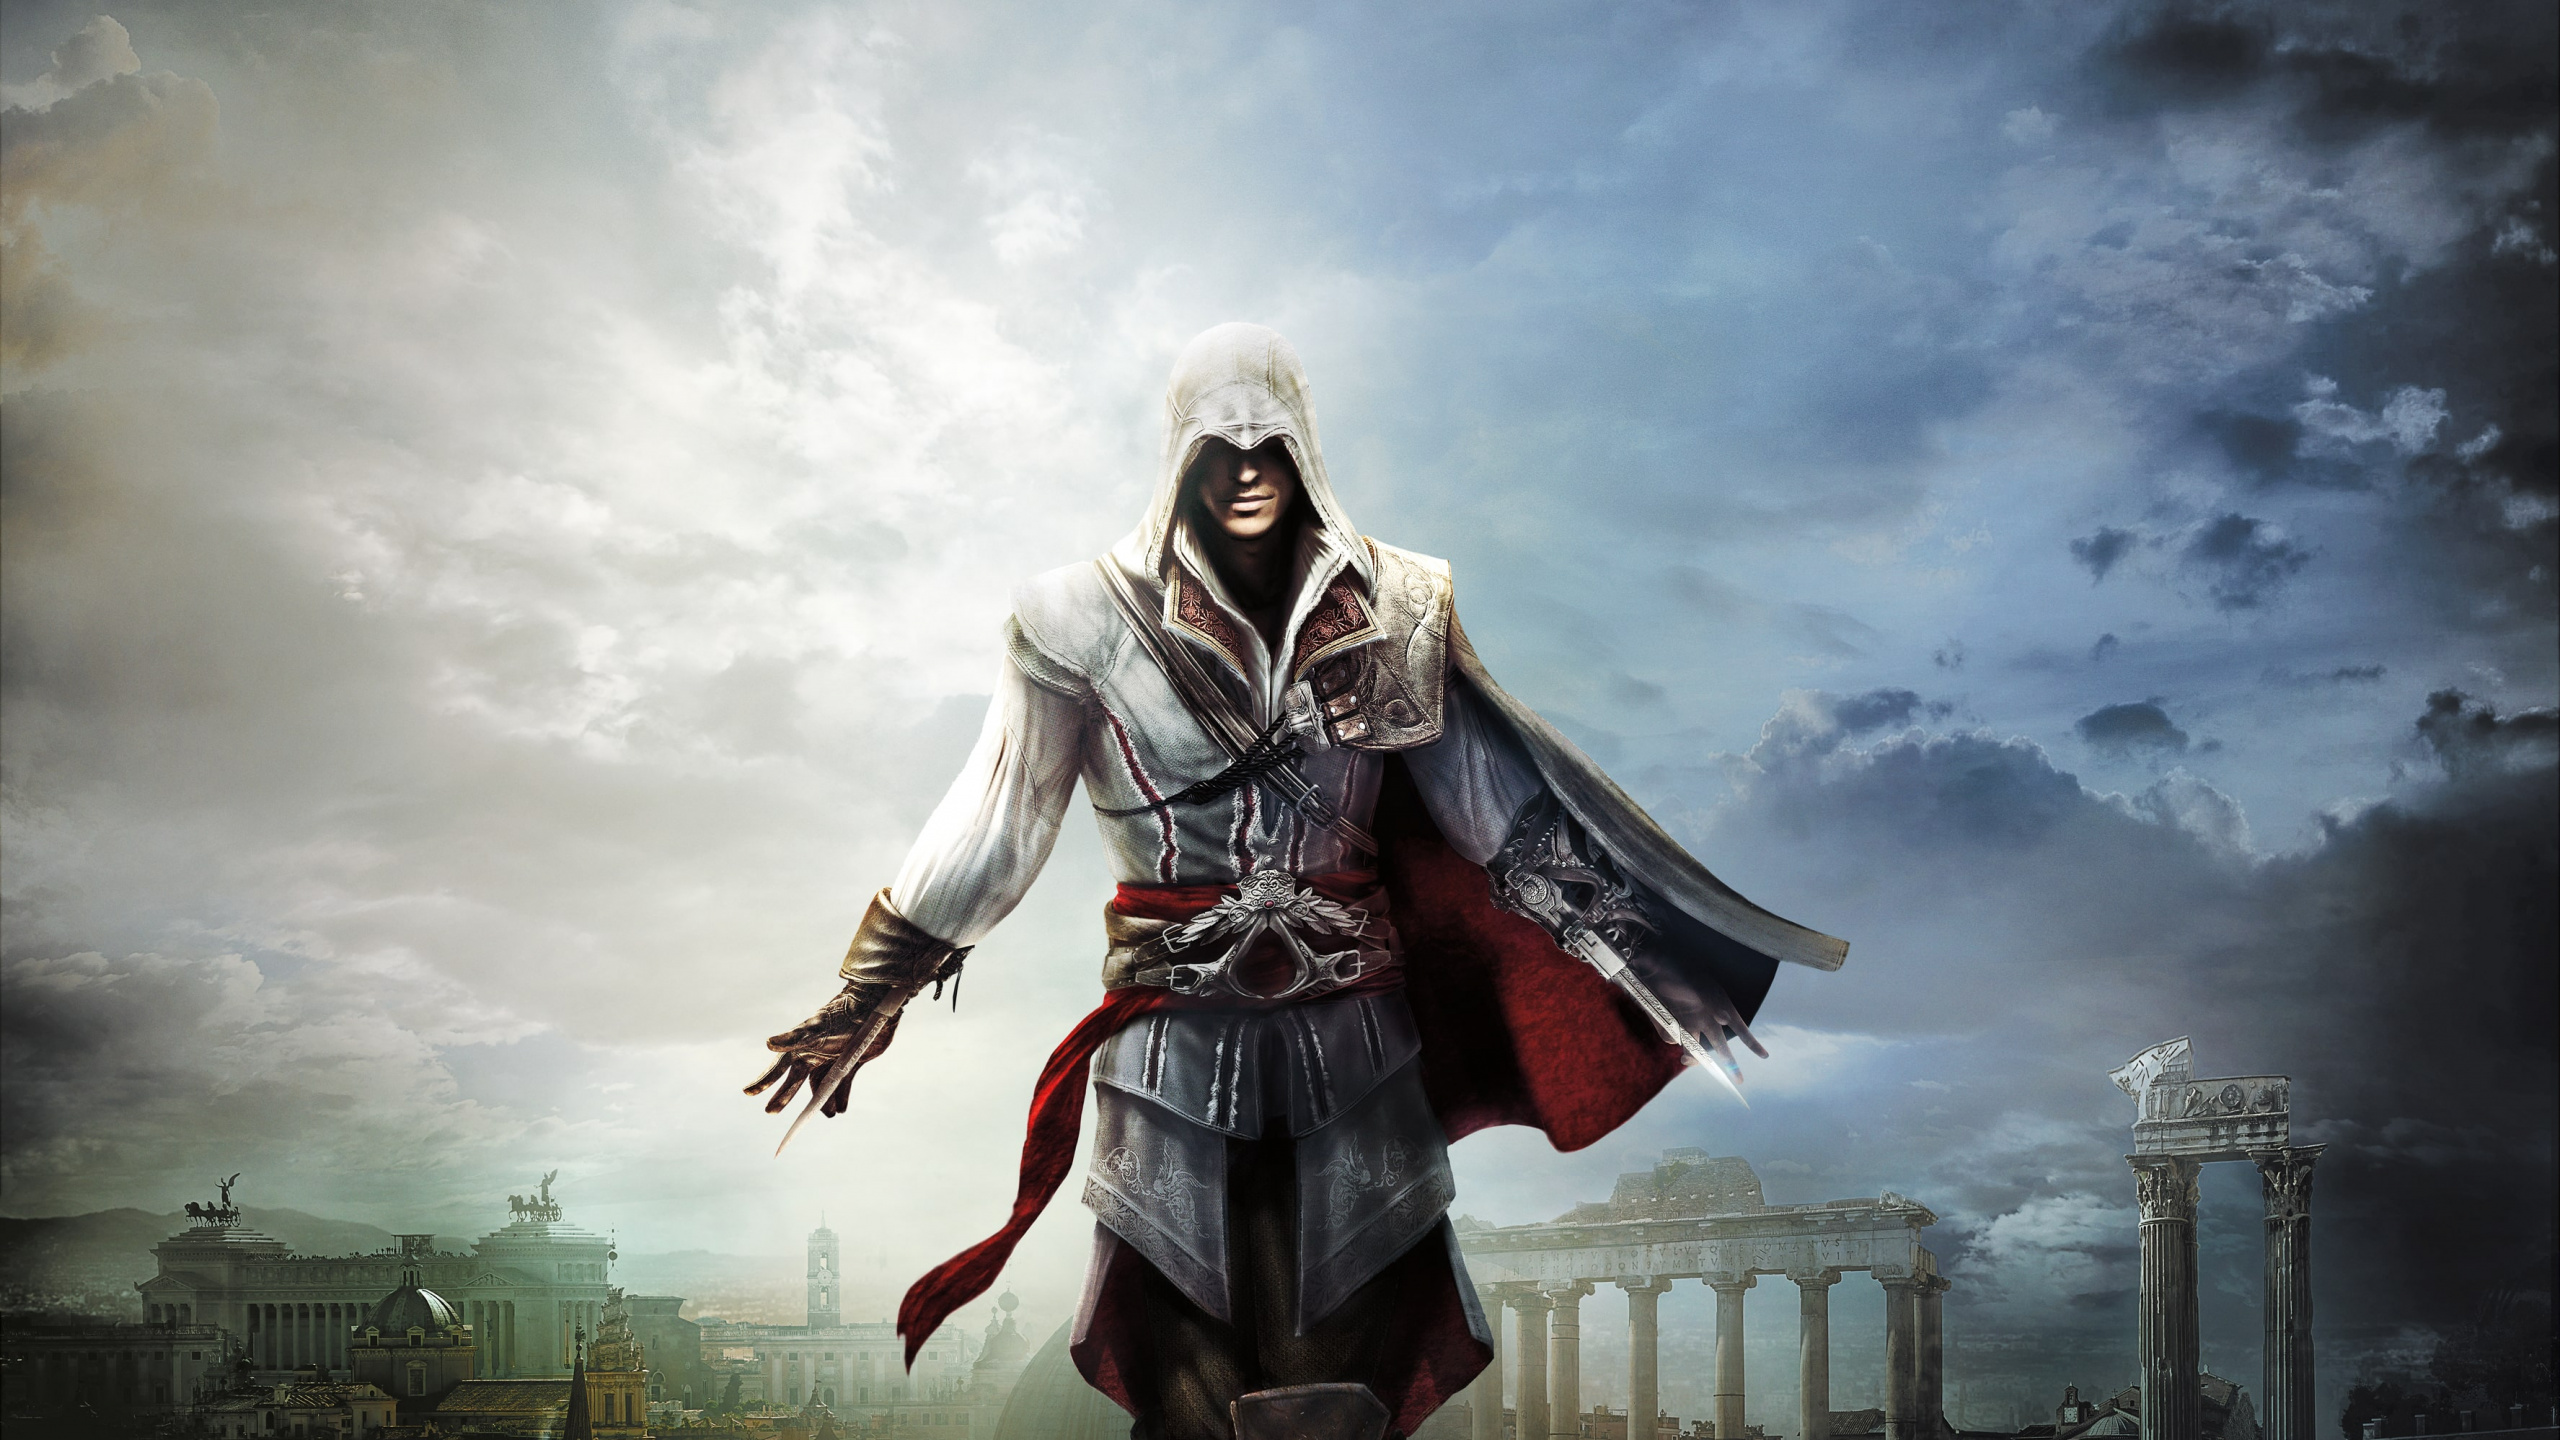 Ezio Auditore, Les Jeux Vidéo, Assassins Creed Revelations, Ciel, Assassins Creed Ezio Trilogy. Wallpaper in 2560x1440 Resolution